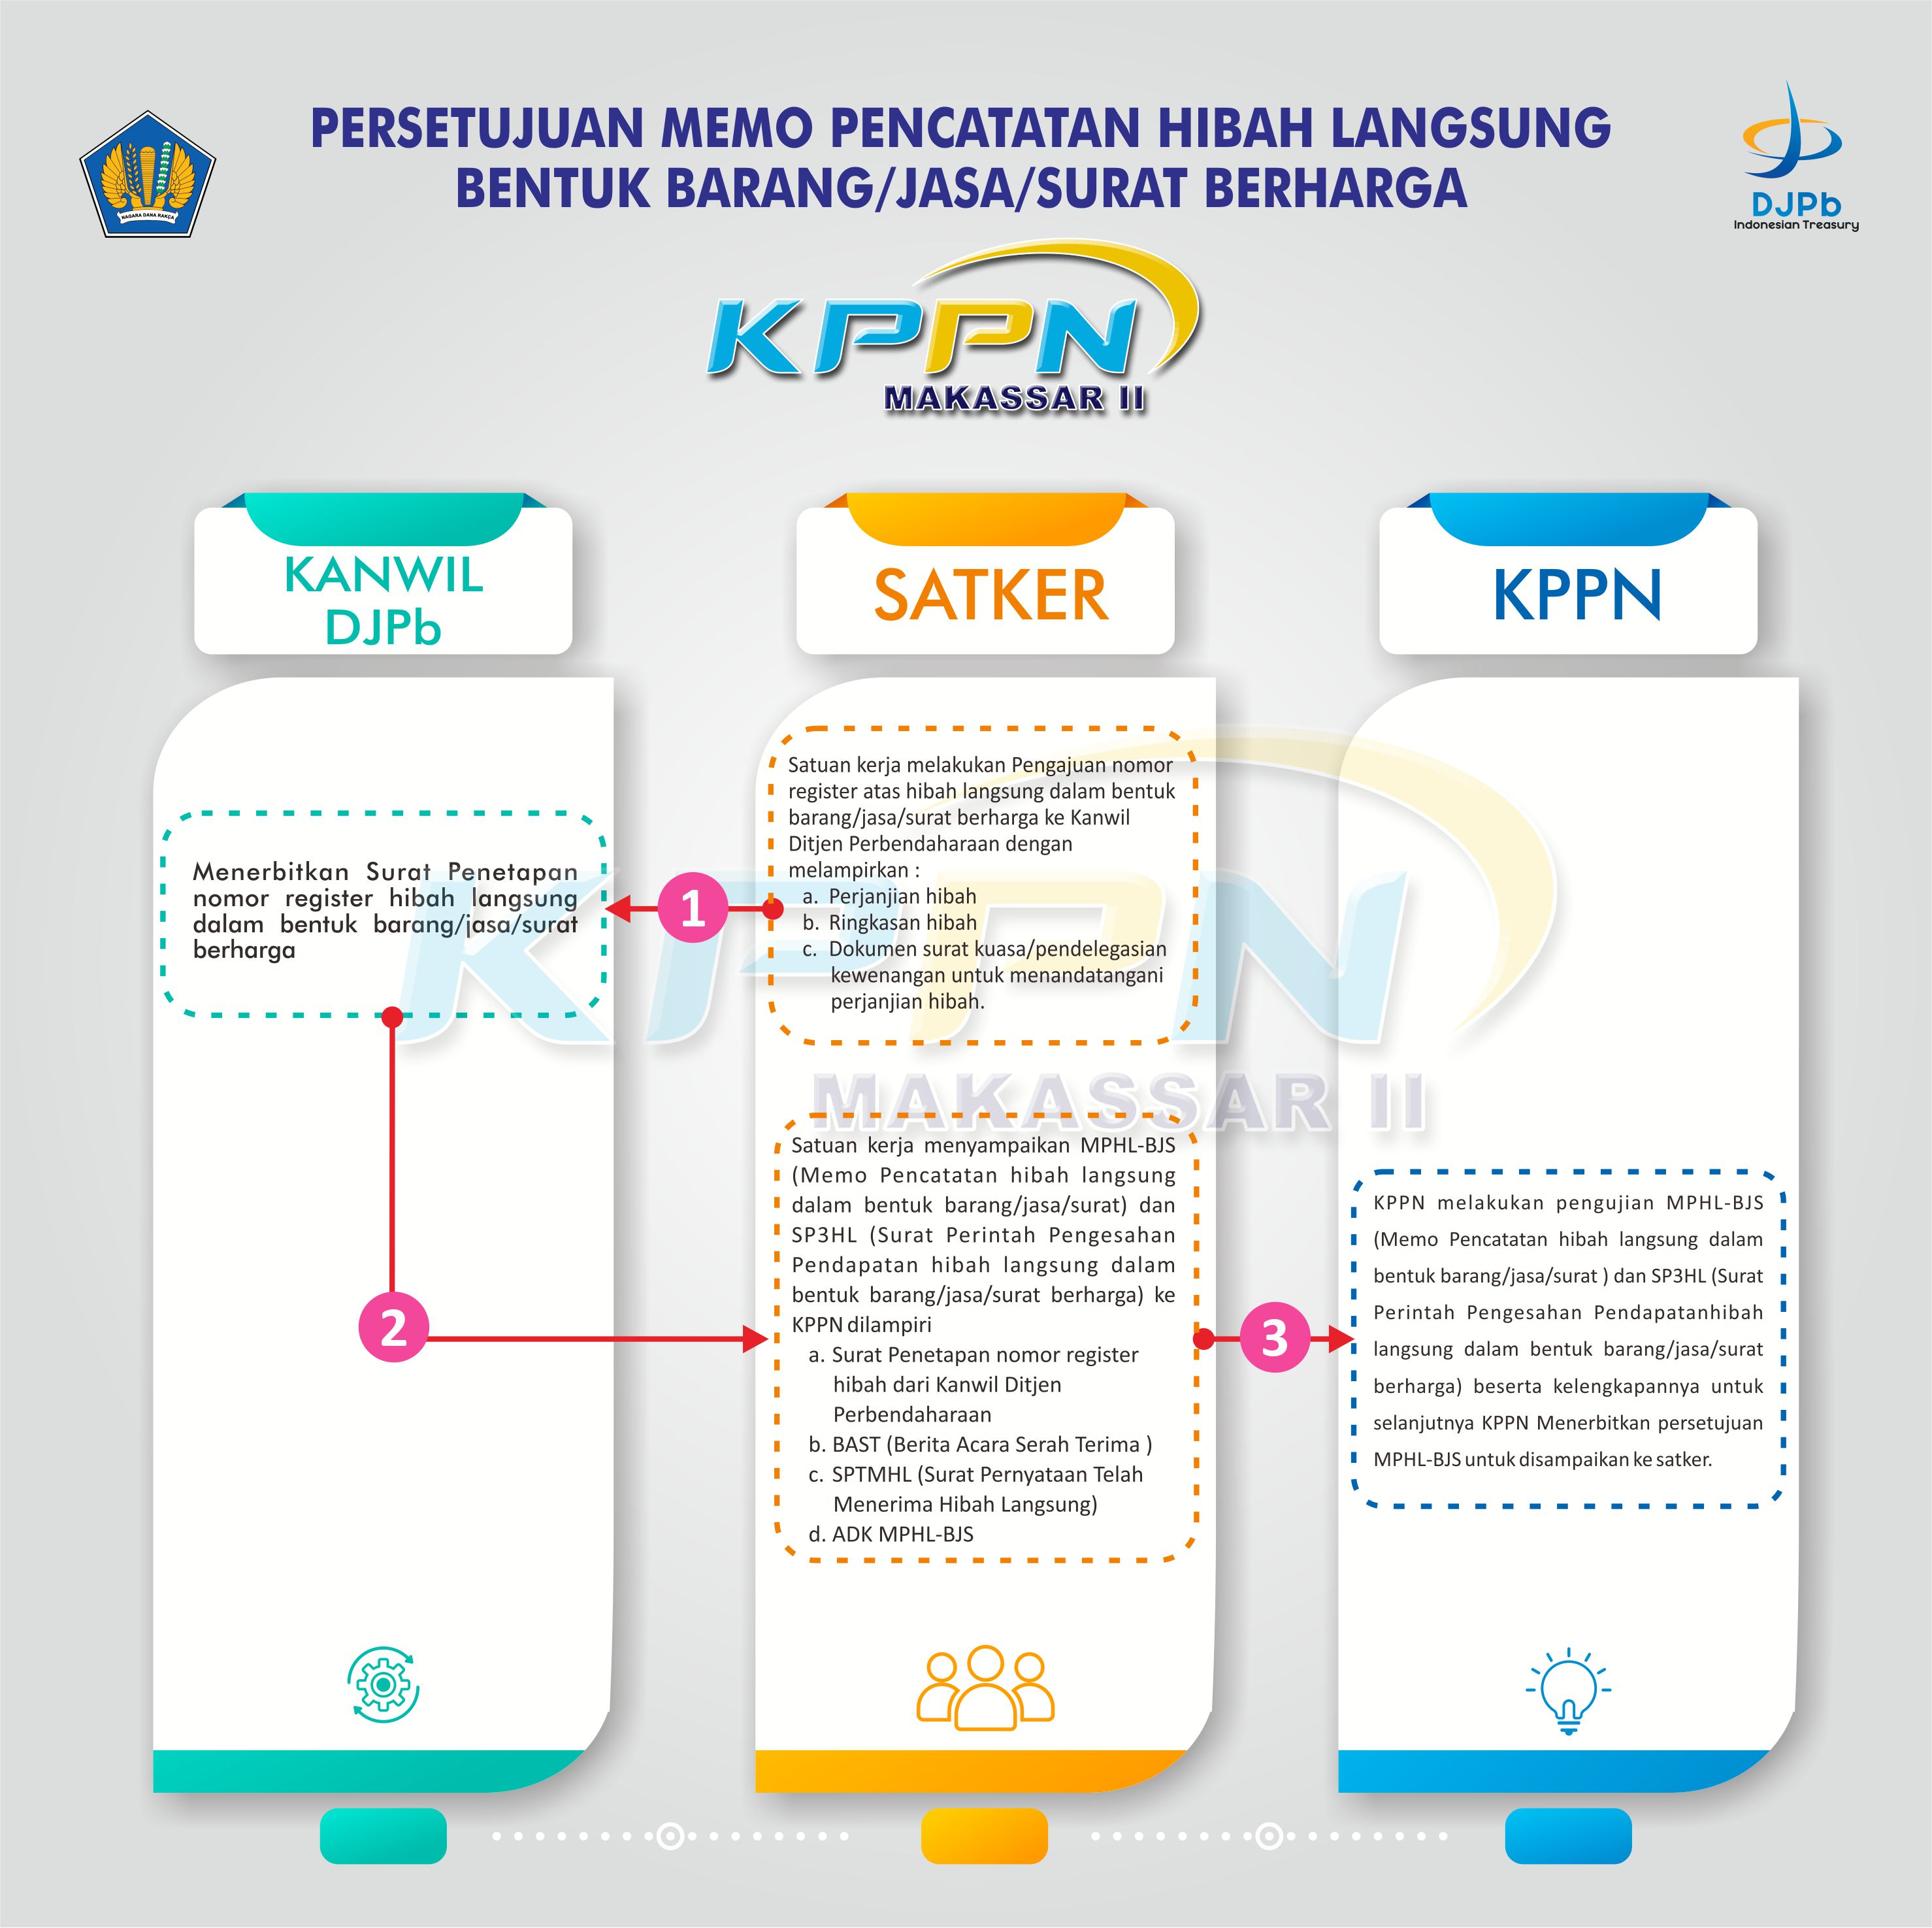 Alur Penerbitan Memo Pencatatan Hibah Langsung Barang Jasa Surat Berharga KPPN Makassar II